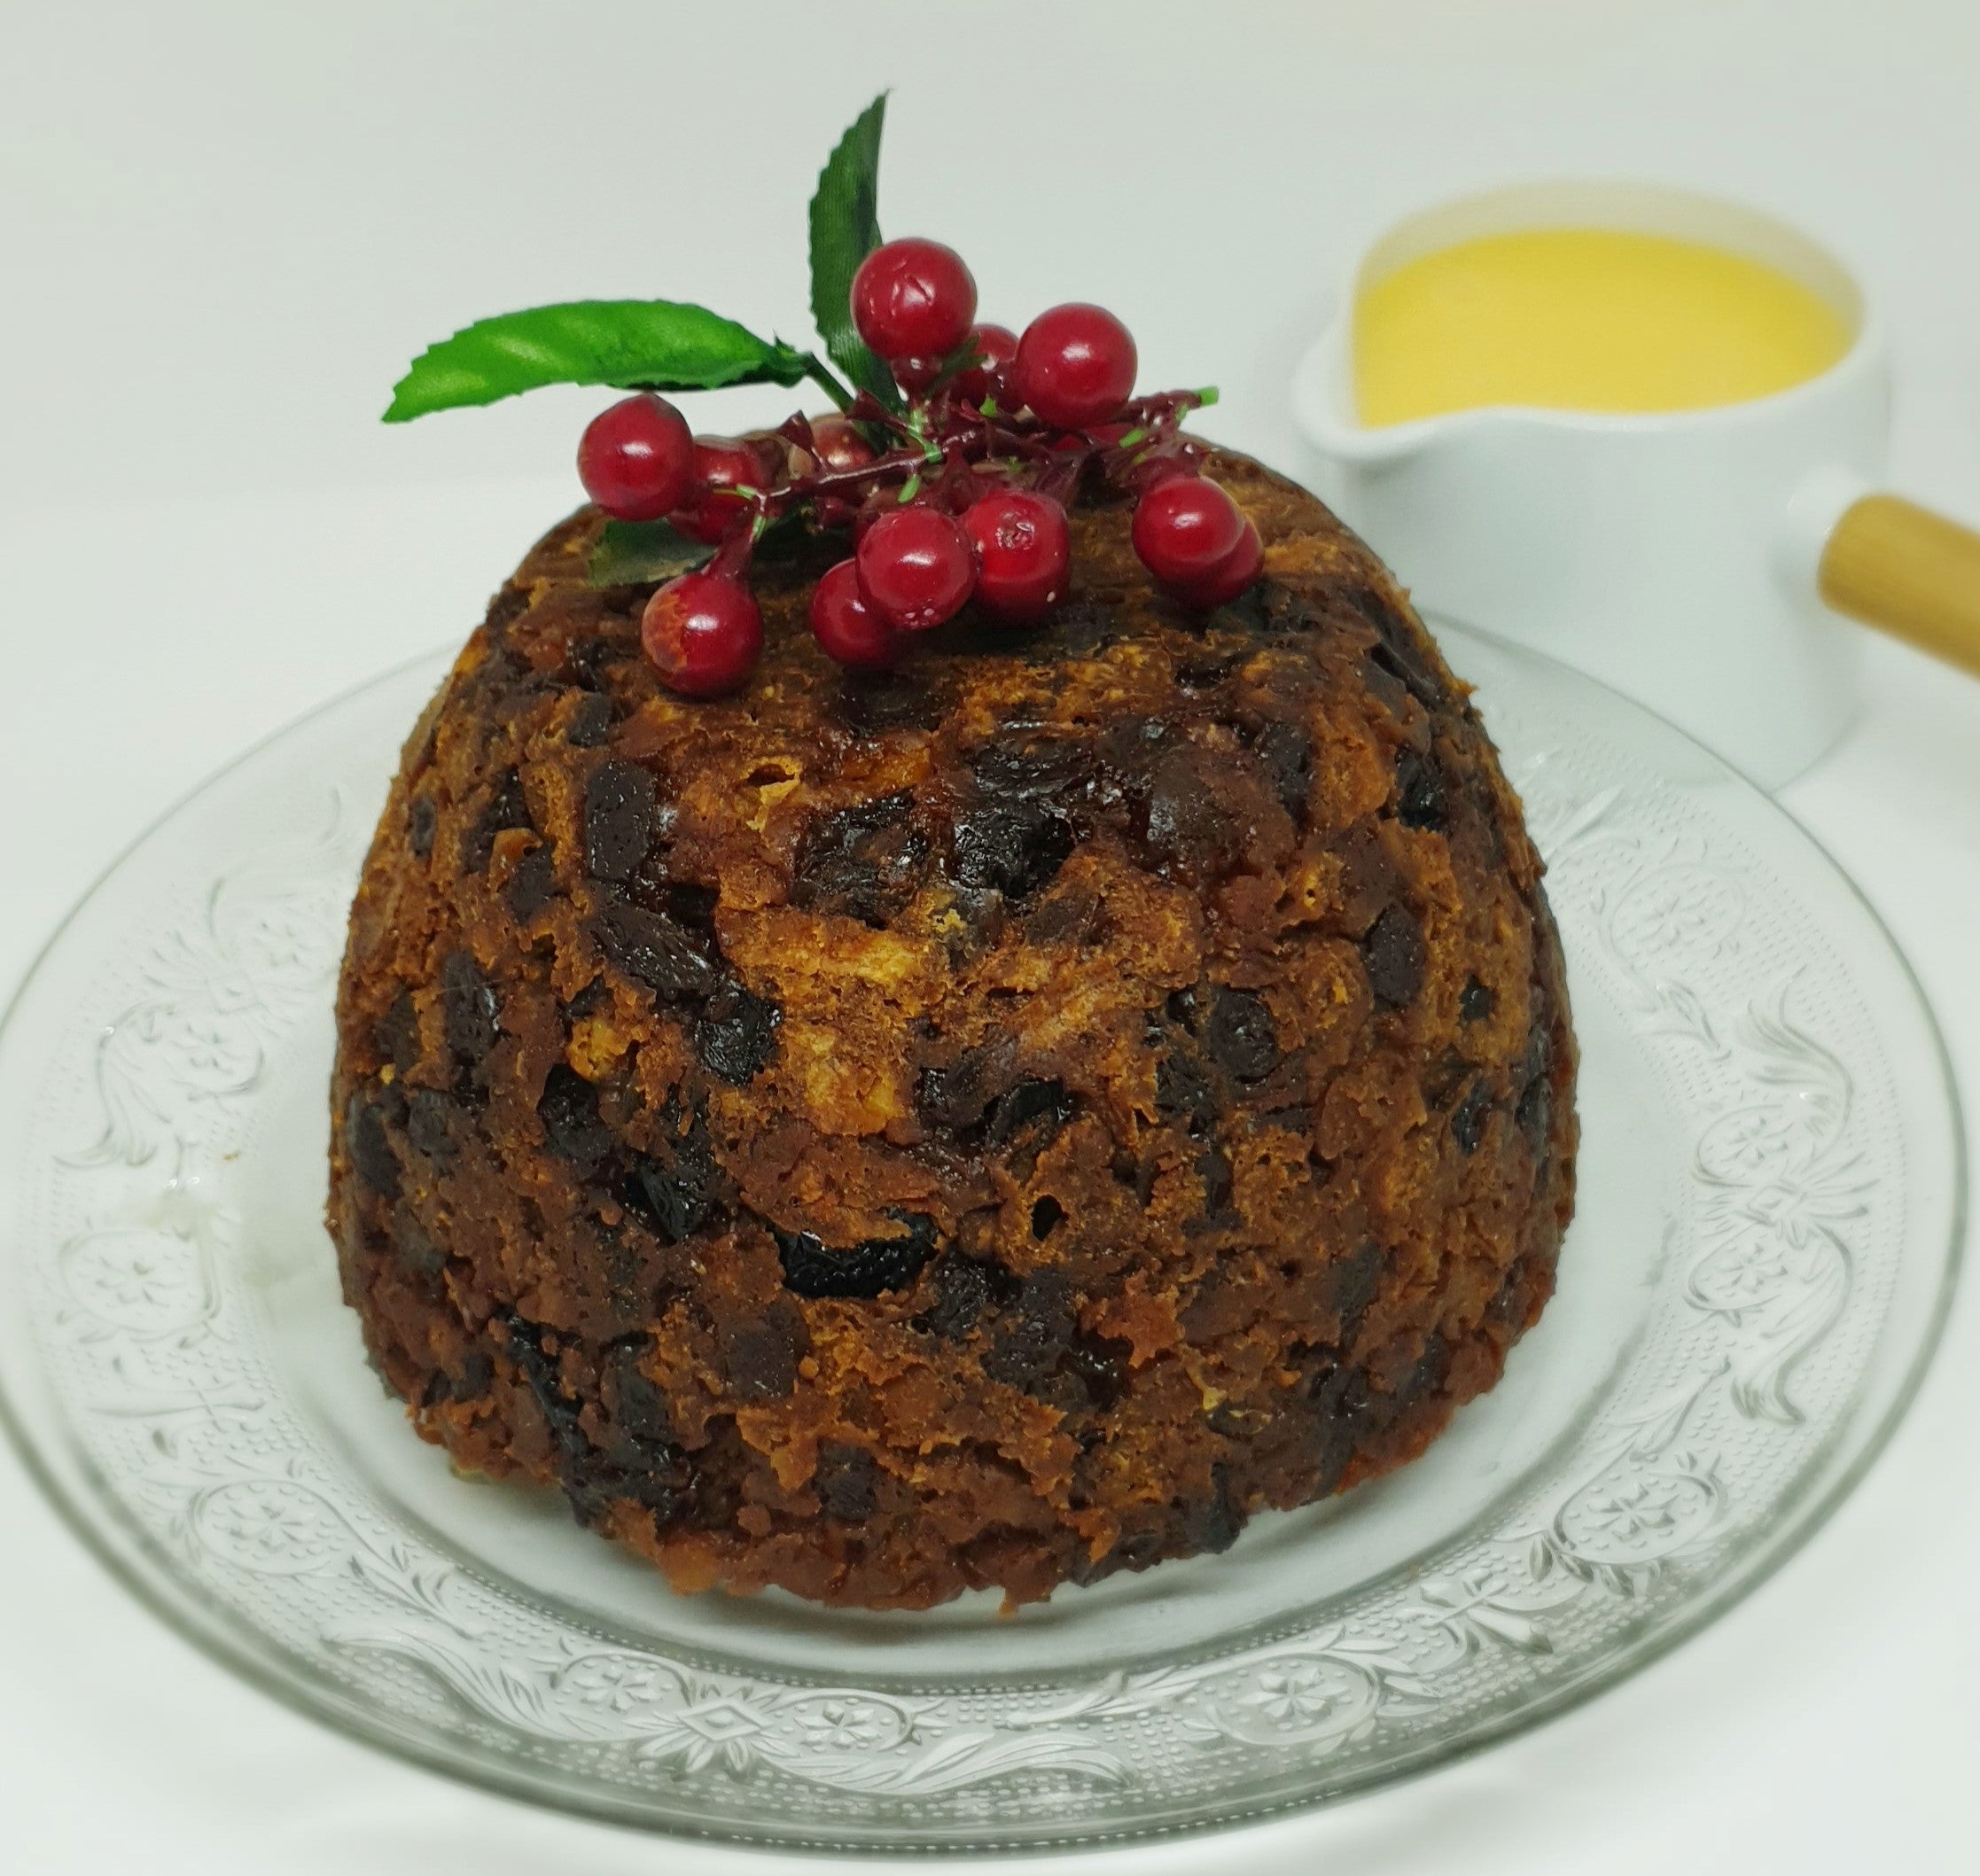 Pudding de Noël en feutre, pudding de Noël en juillet, fabriqué à partir de  feutre de laine -  France